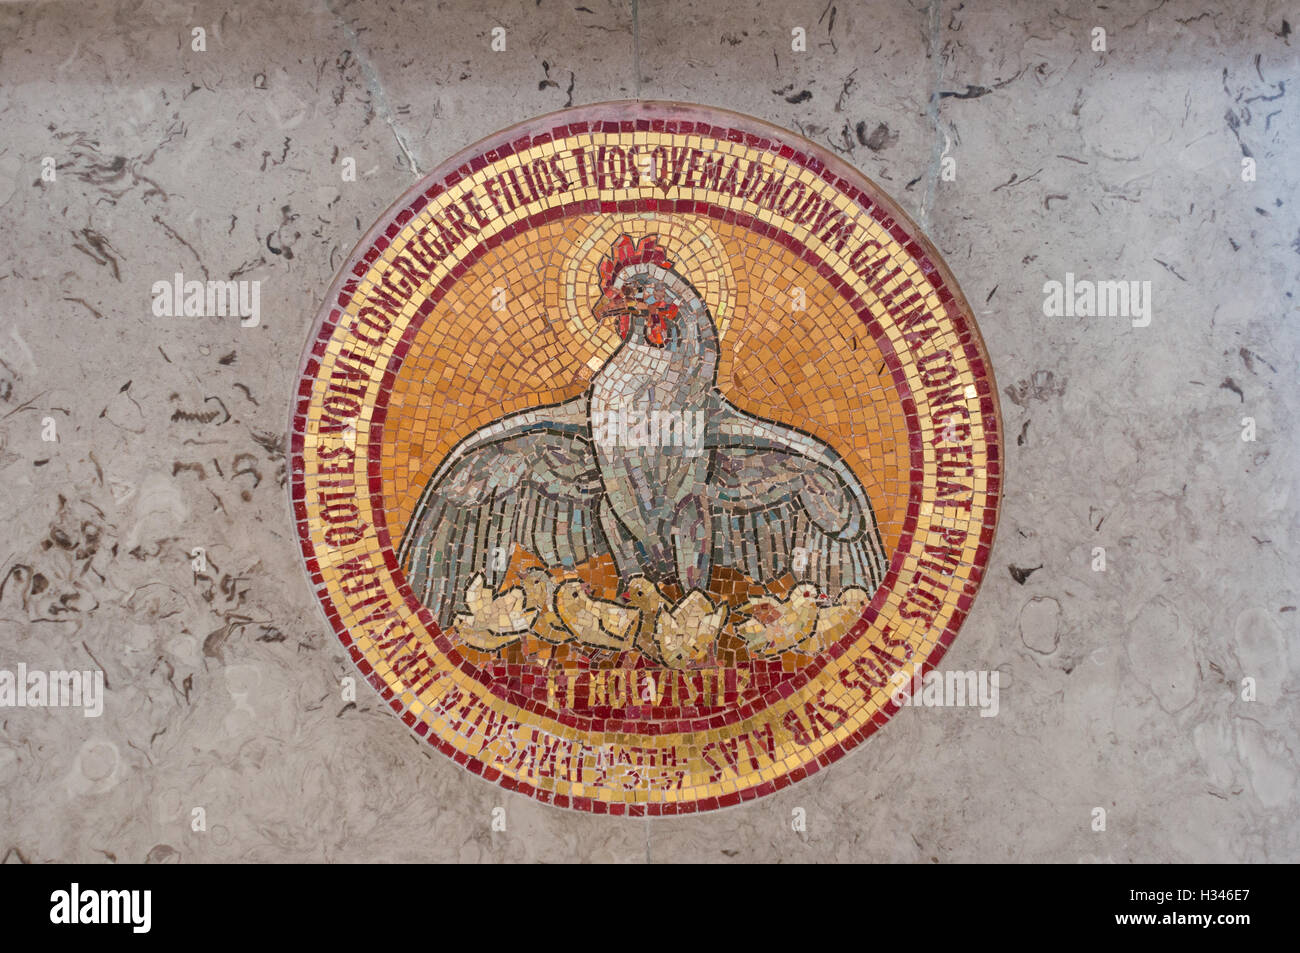 Dettaglio del mosaico nella chiesa tra cui un pollo con pulcini e il versetto biblico Foto Stock